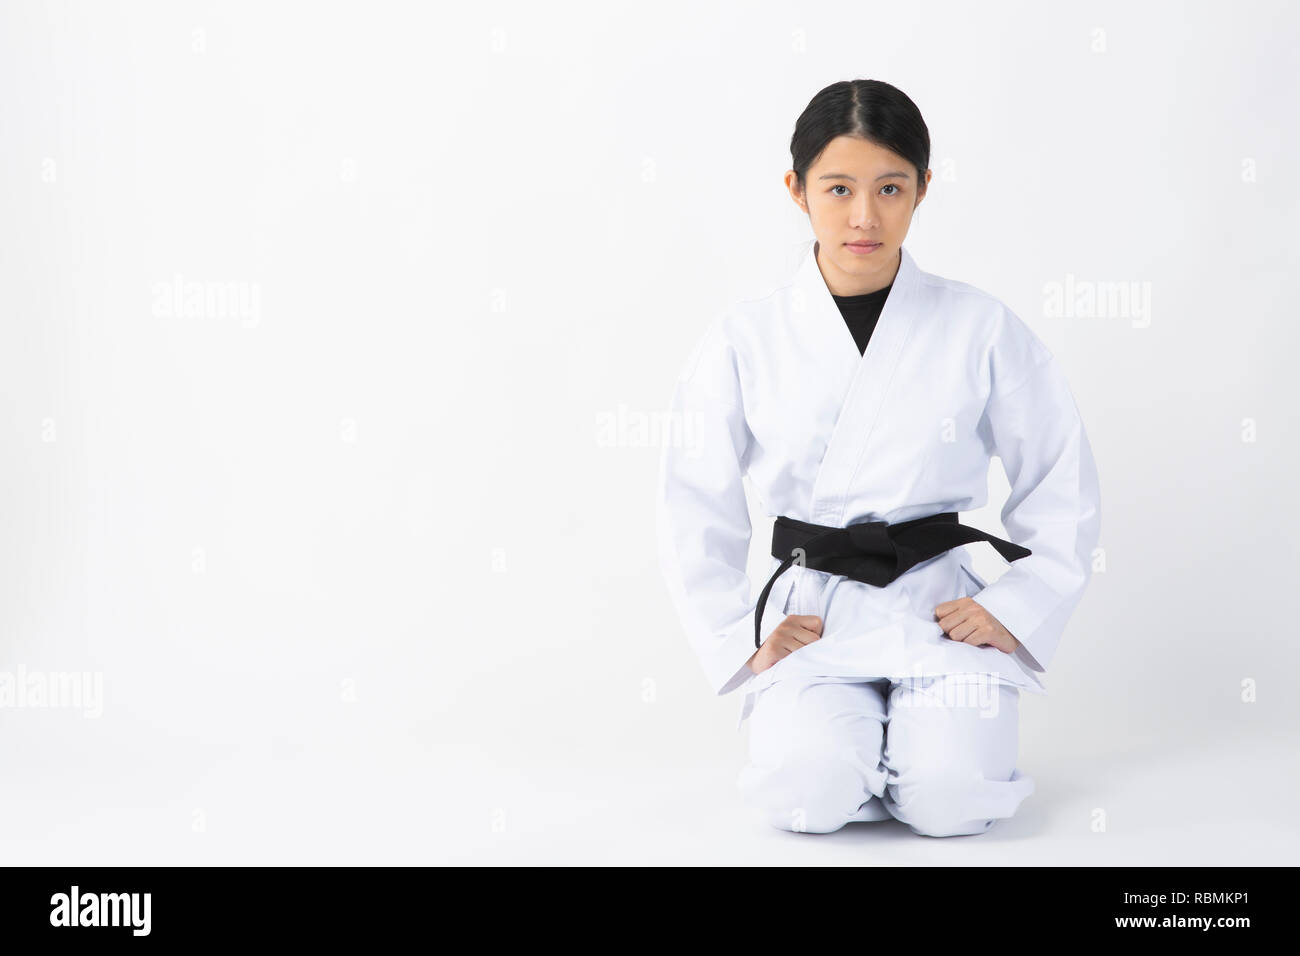 Junge Frau mit Karate Anzug an Kamera starrt auf weißem Hintergrund Stockfoto